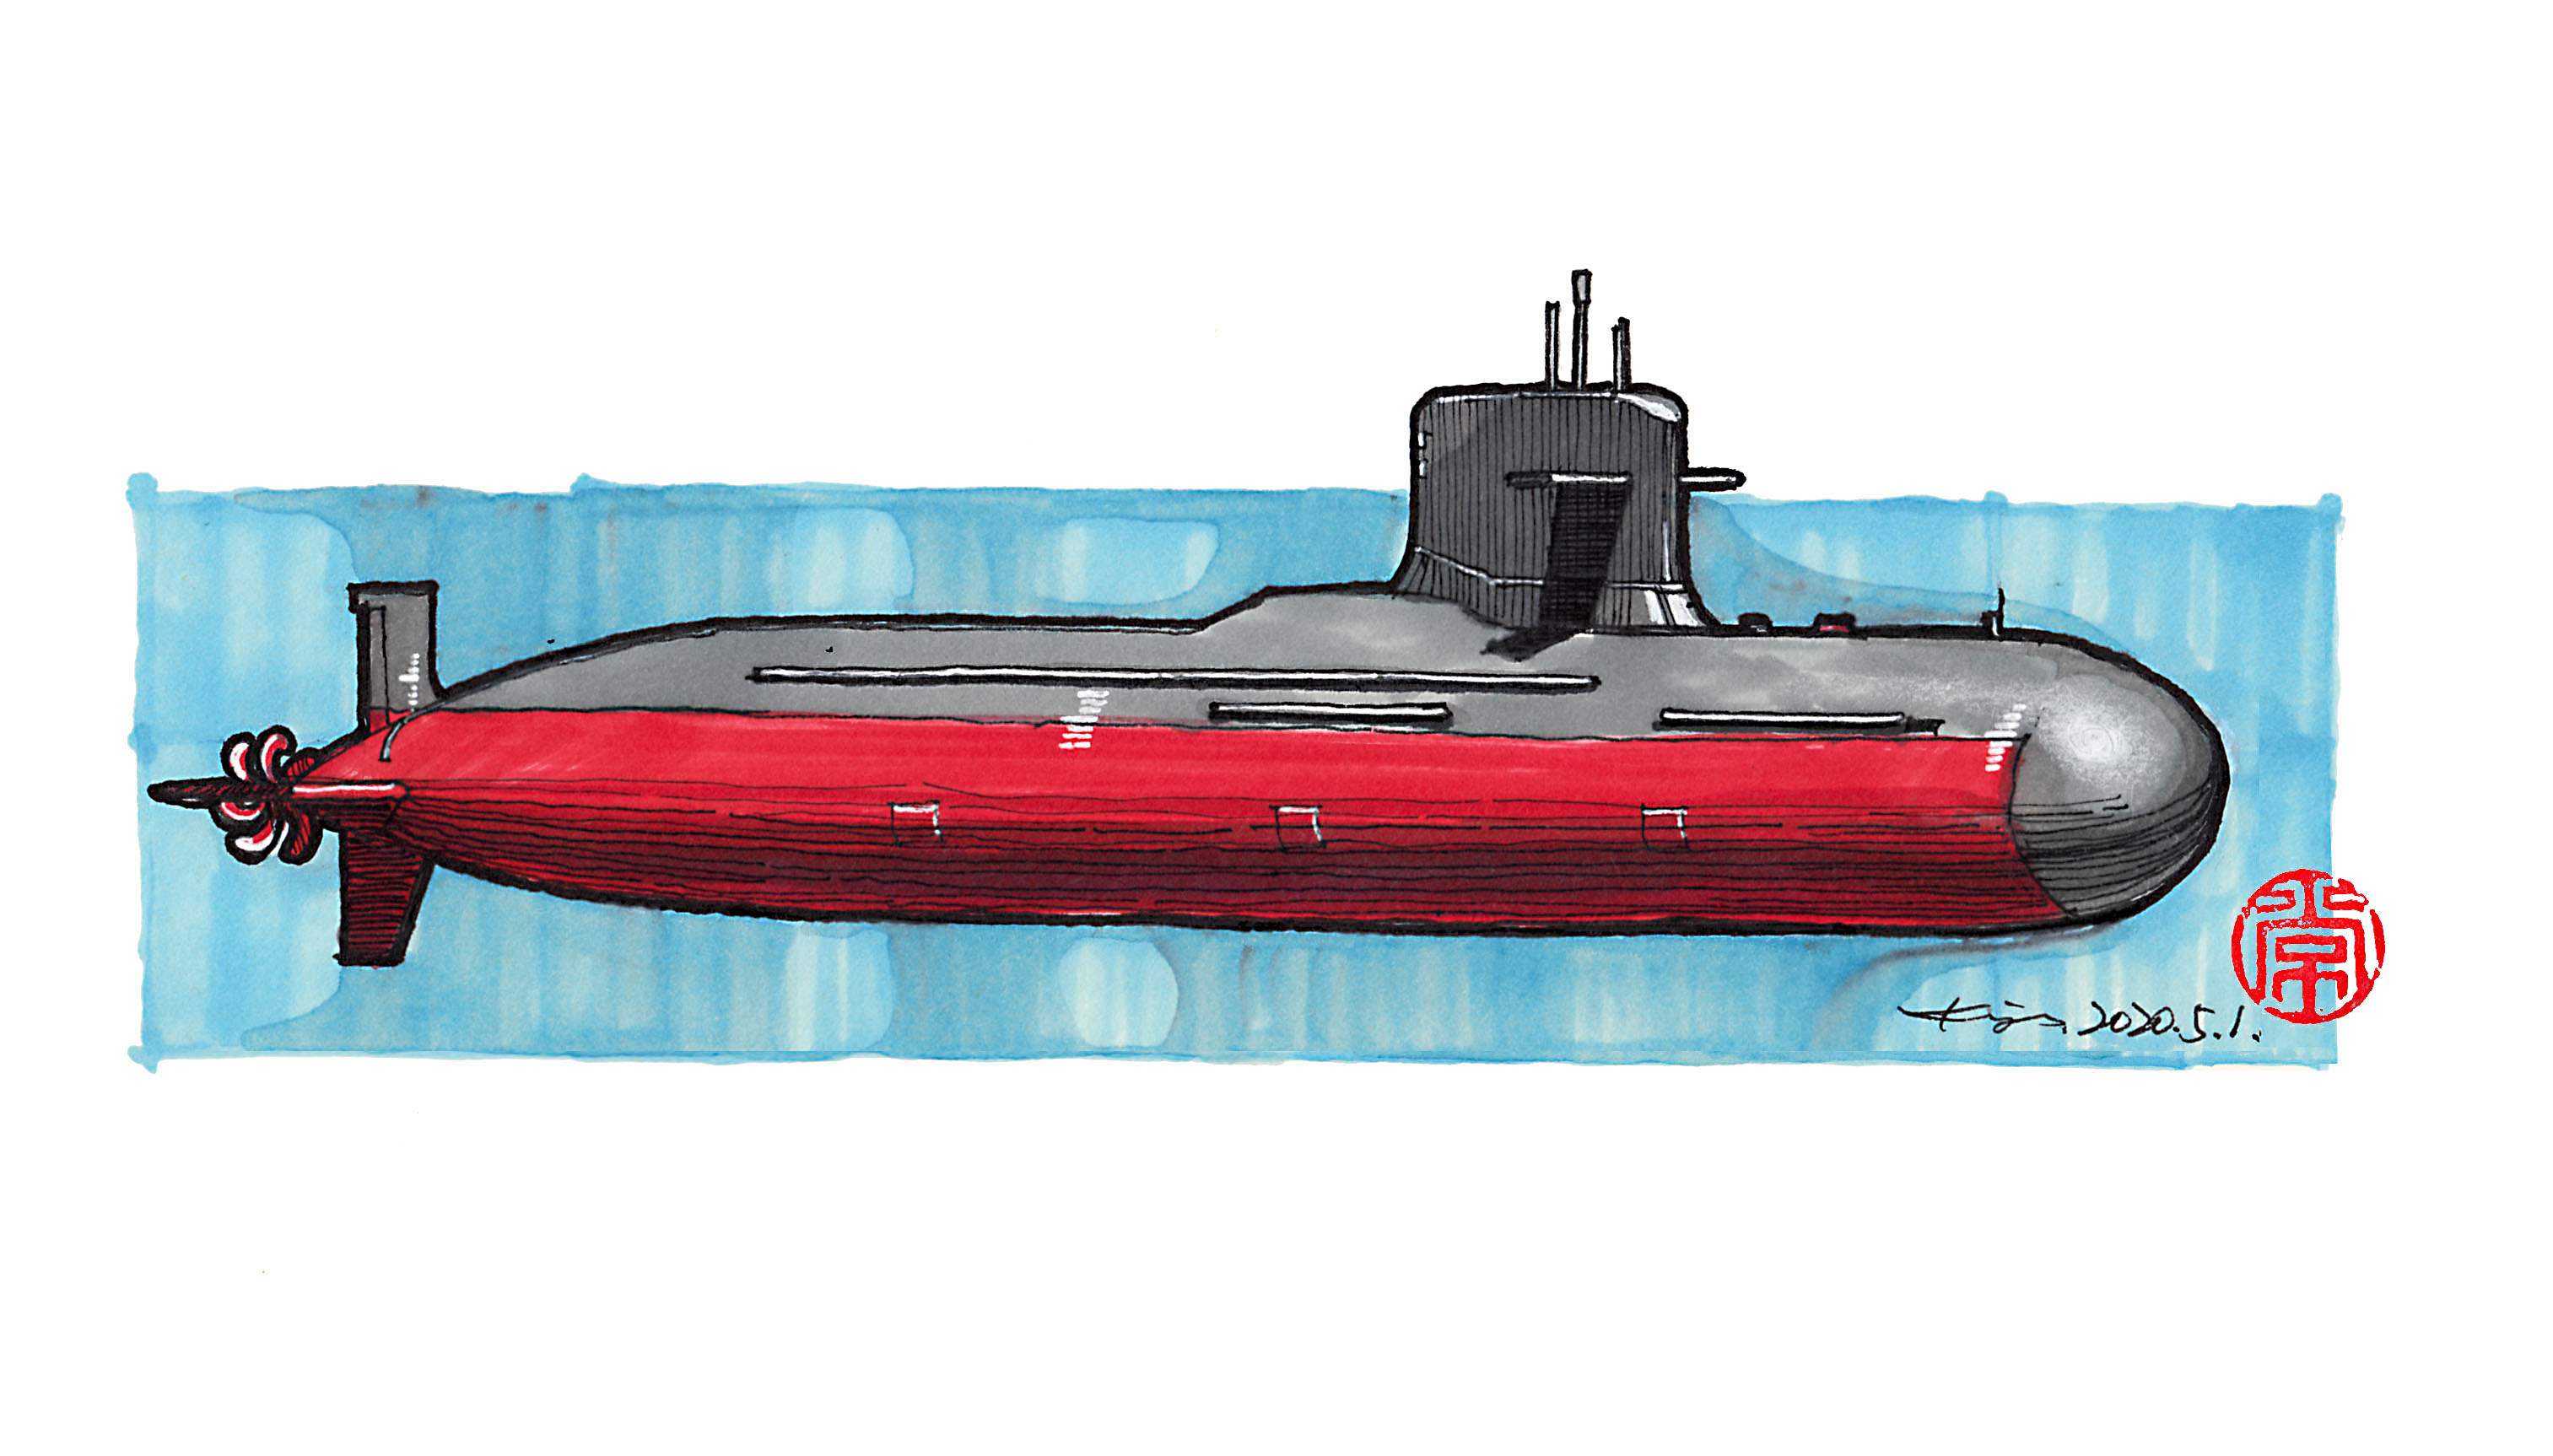 核潜艇怎么画军用图片